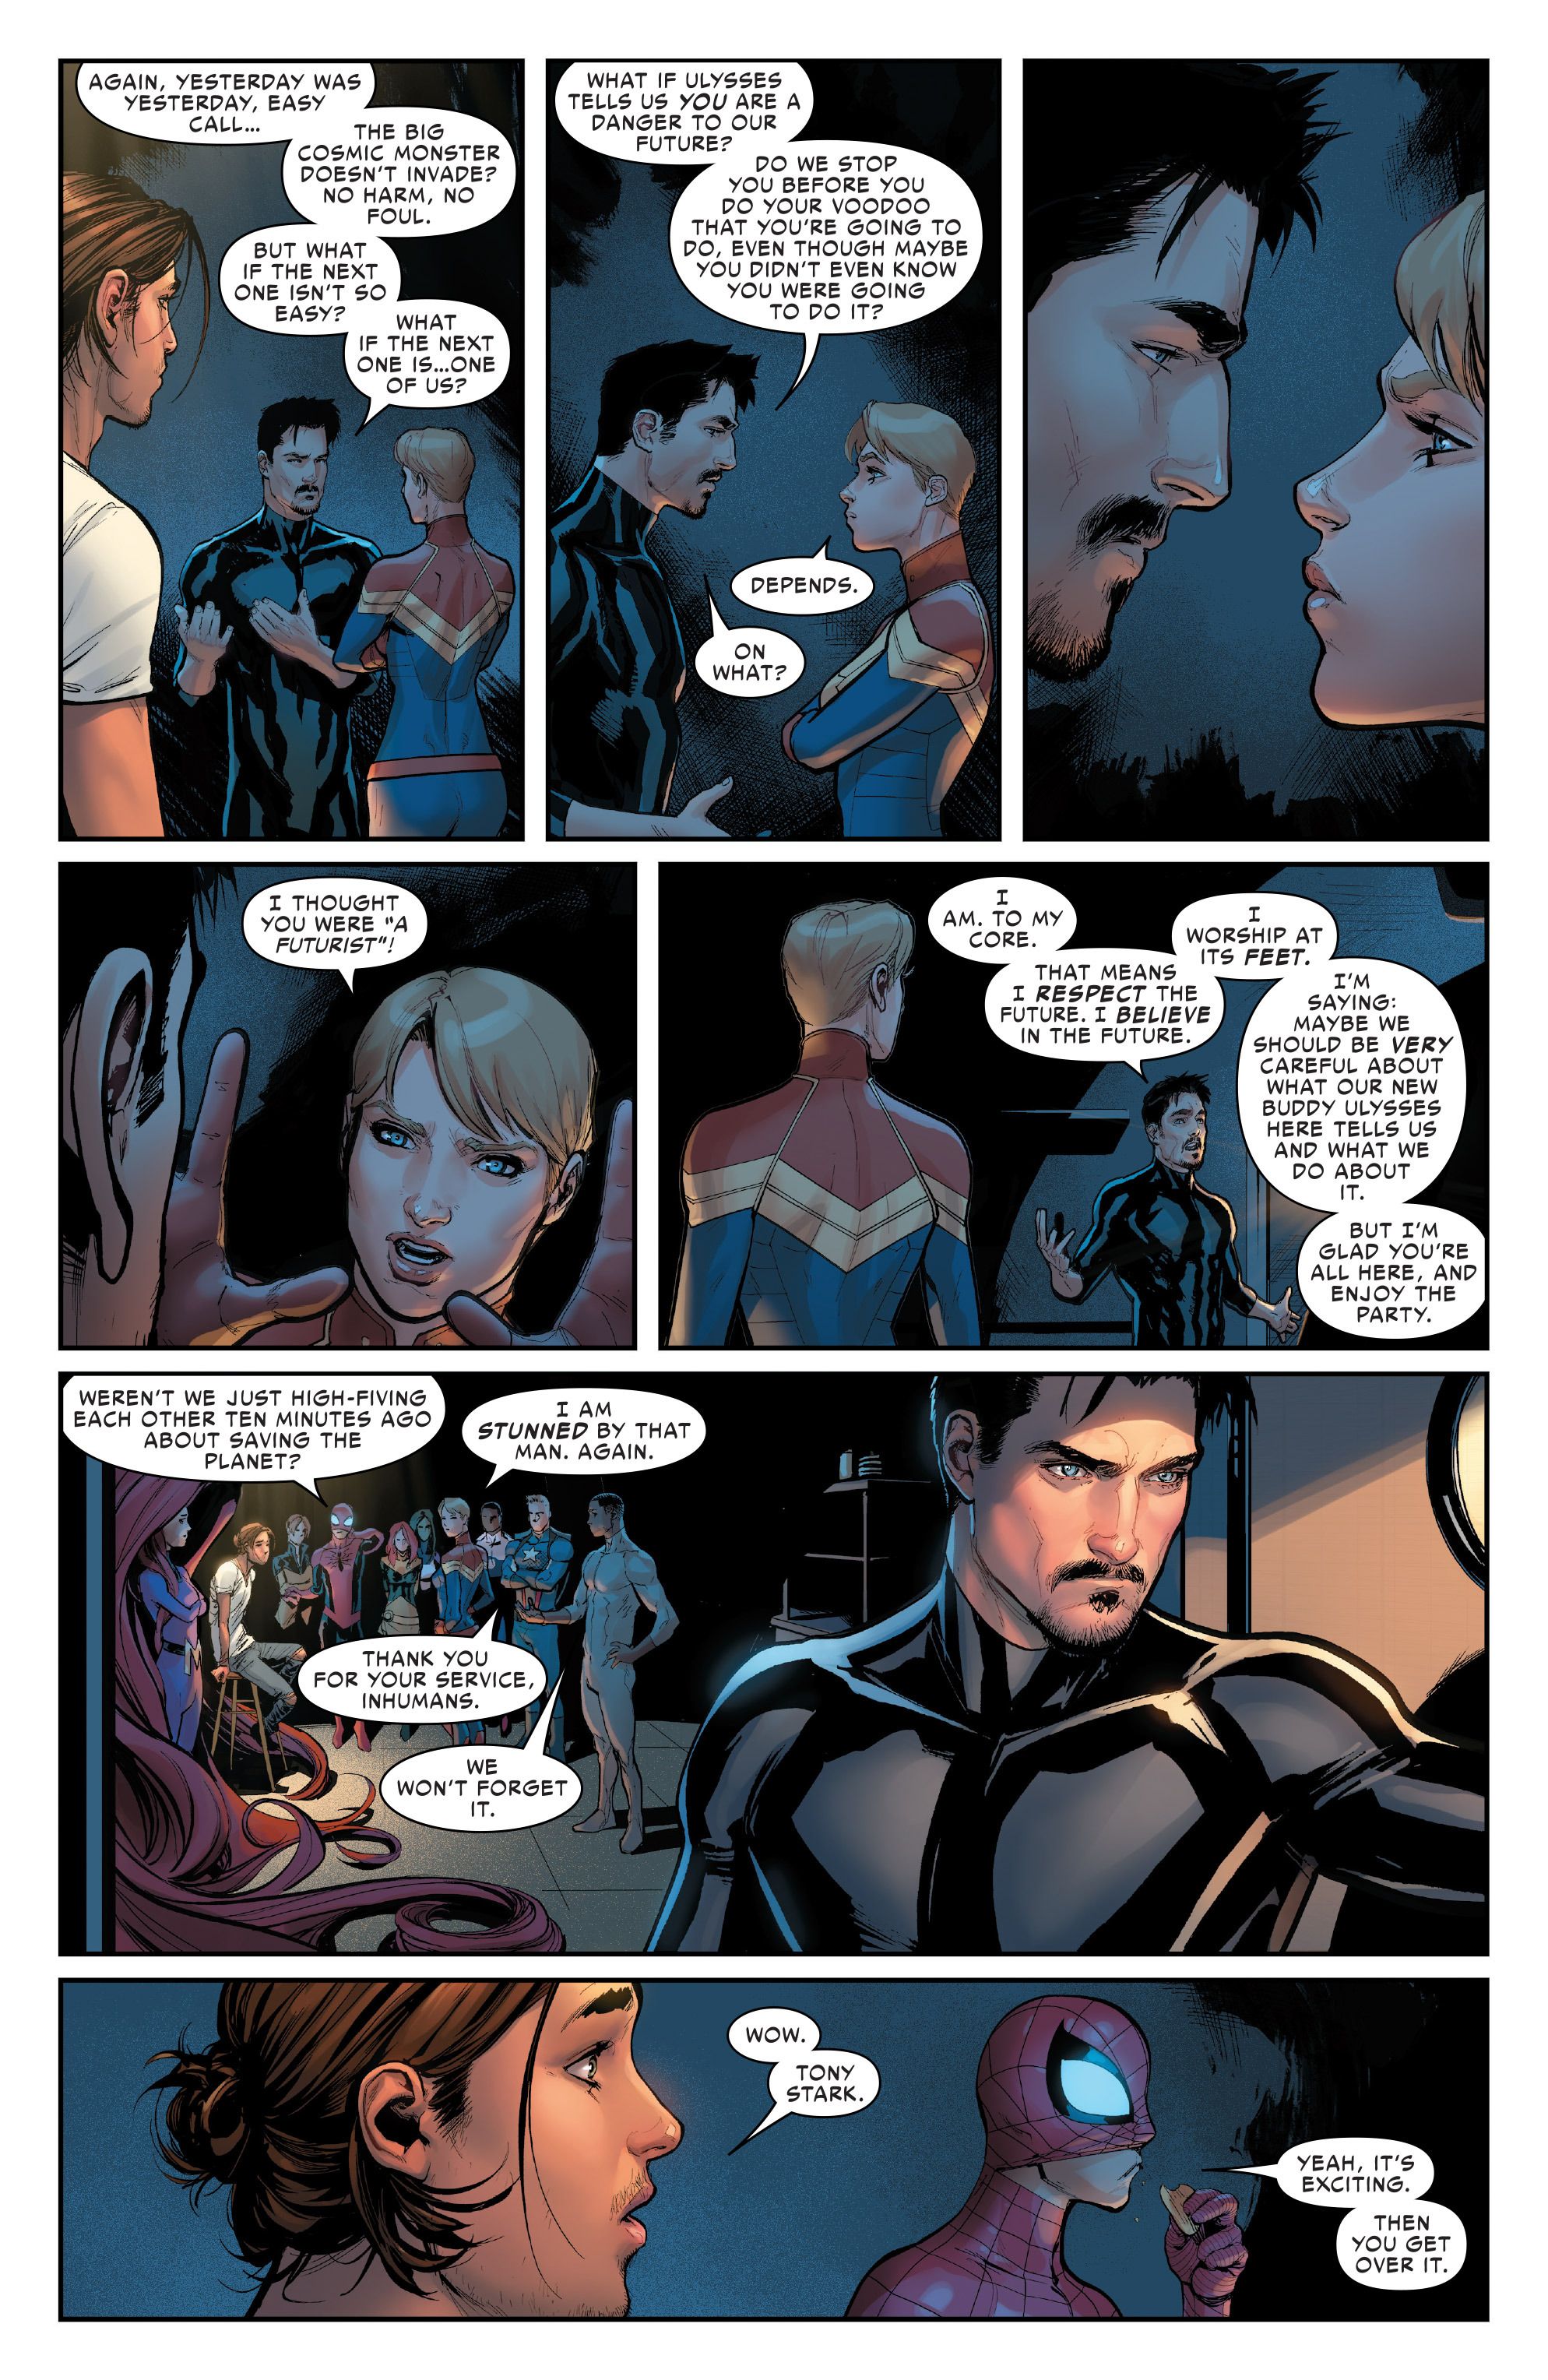 Civil War II #1 Spoilers - Tony Stark vs Carol Danvers Futurist Debate